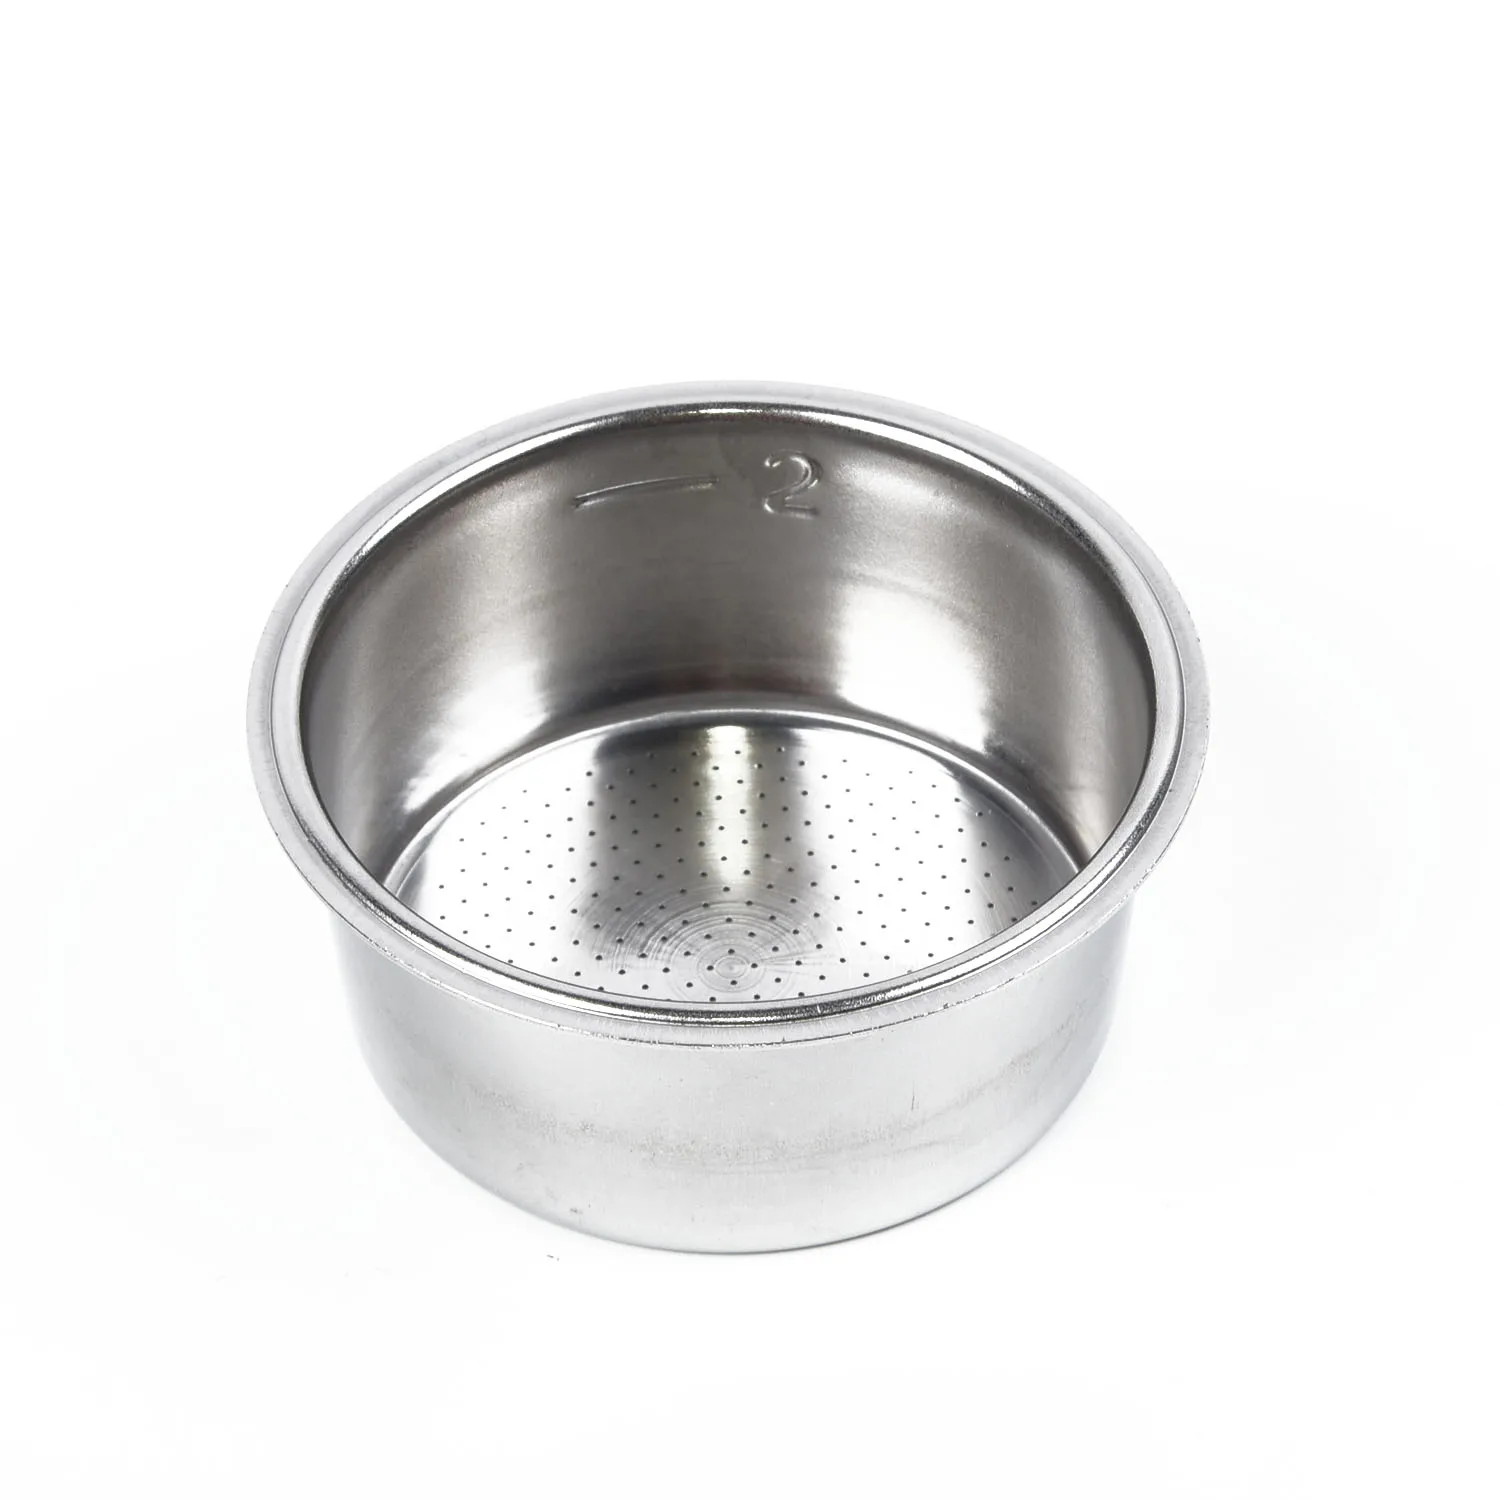 

Кружка для фильтра без давления для Breville Delonghi Krups, серебряная корзина для фильтра для кофе, 51 мм, цвет Горячая Распродажа, высокое качество, абсолютно новая